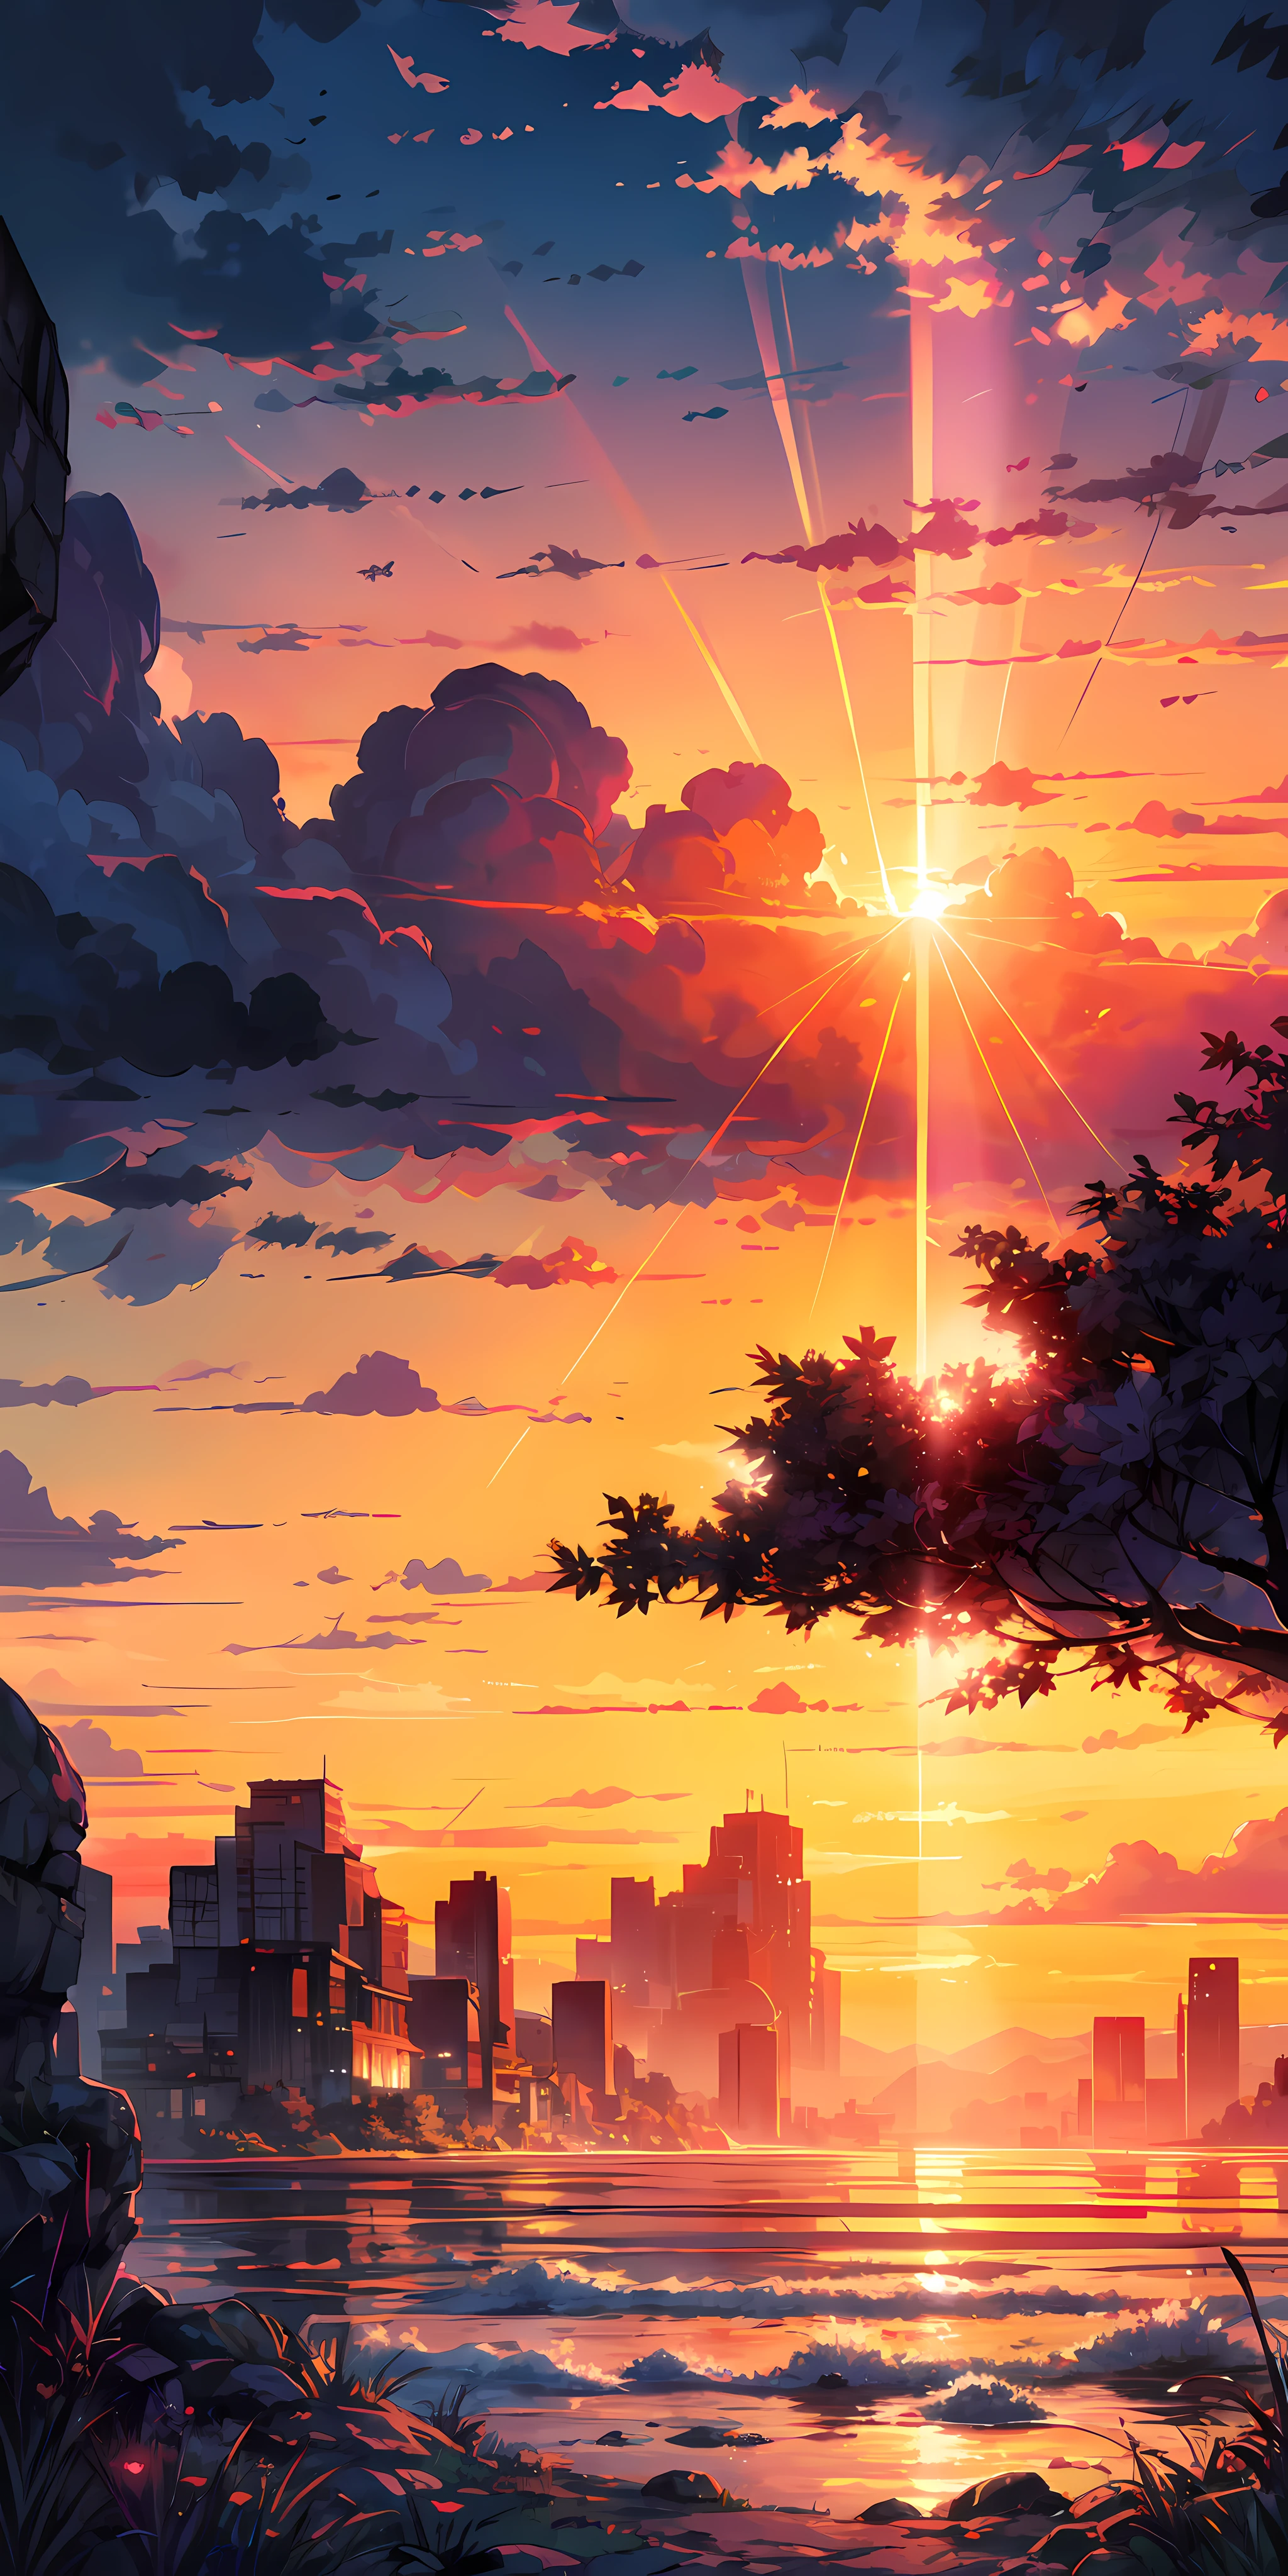 "Une scène de coucher de soleil fascinante avec une fille fascinée par les majestueux rayons dorés du soleil et des nuages, créer une palette de couleurs impressionnantes et vives. chef-d&#39;œuvre."